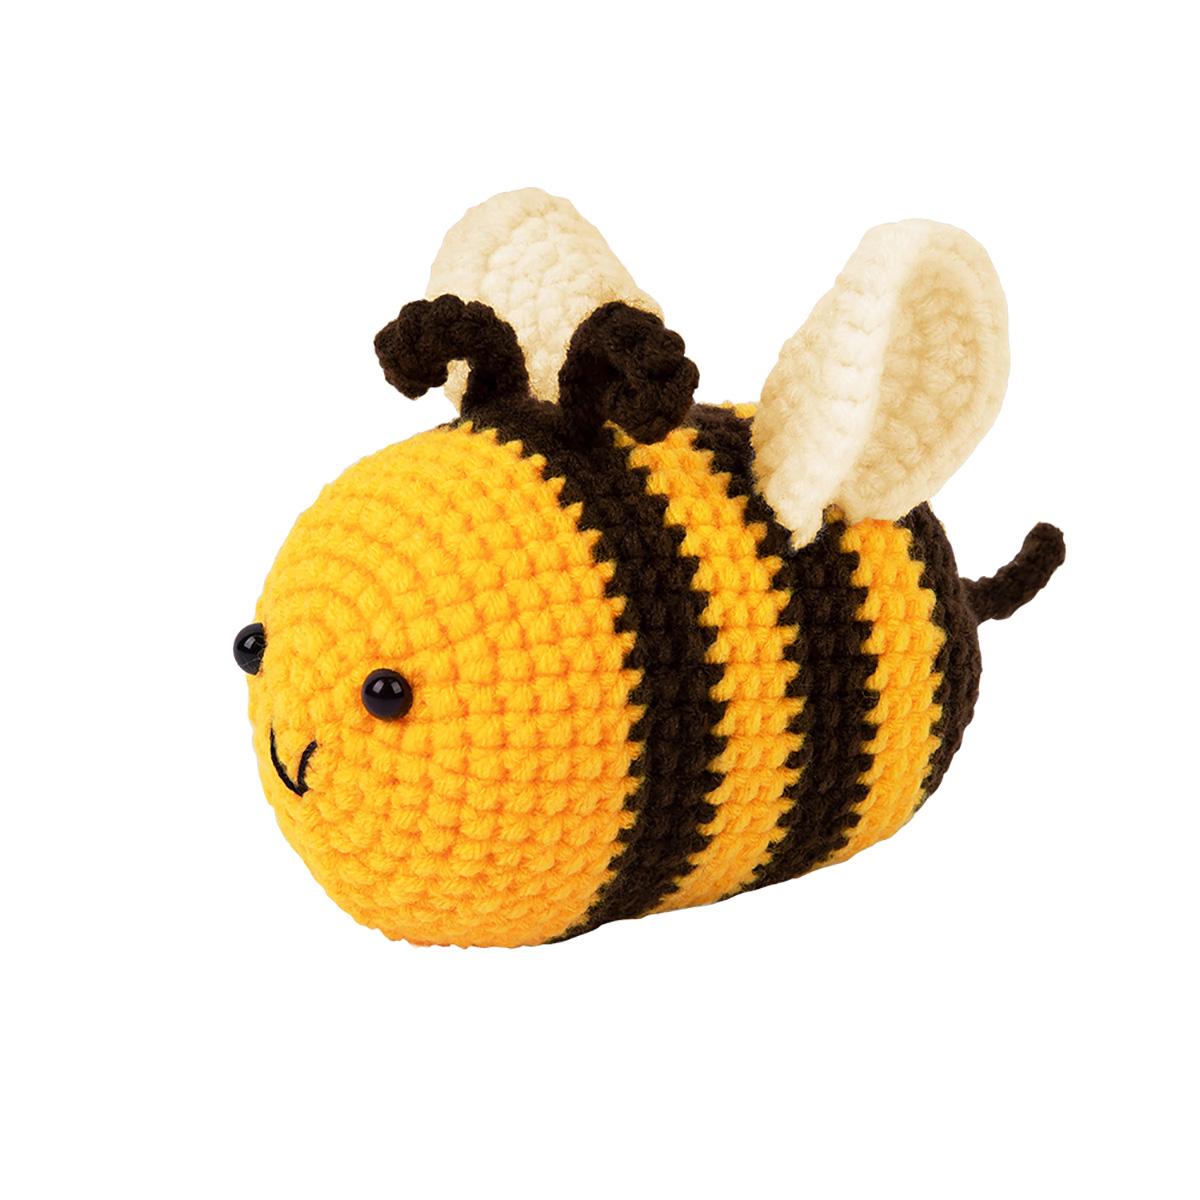 Мягкая игрушка - пчела, выкройка - КлуКлу